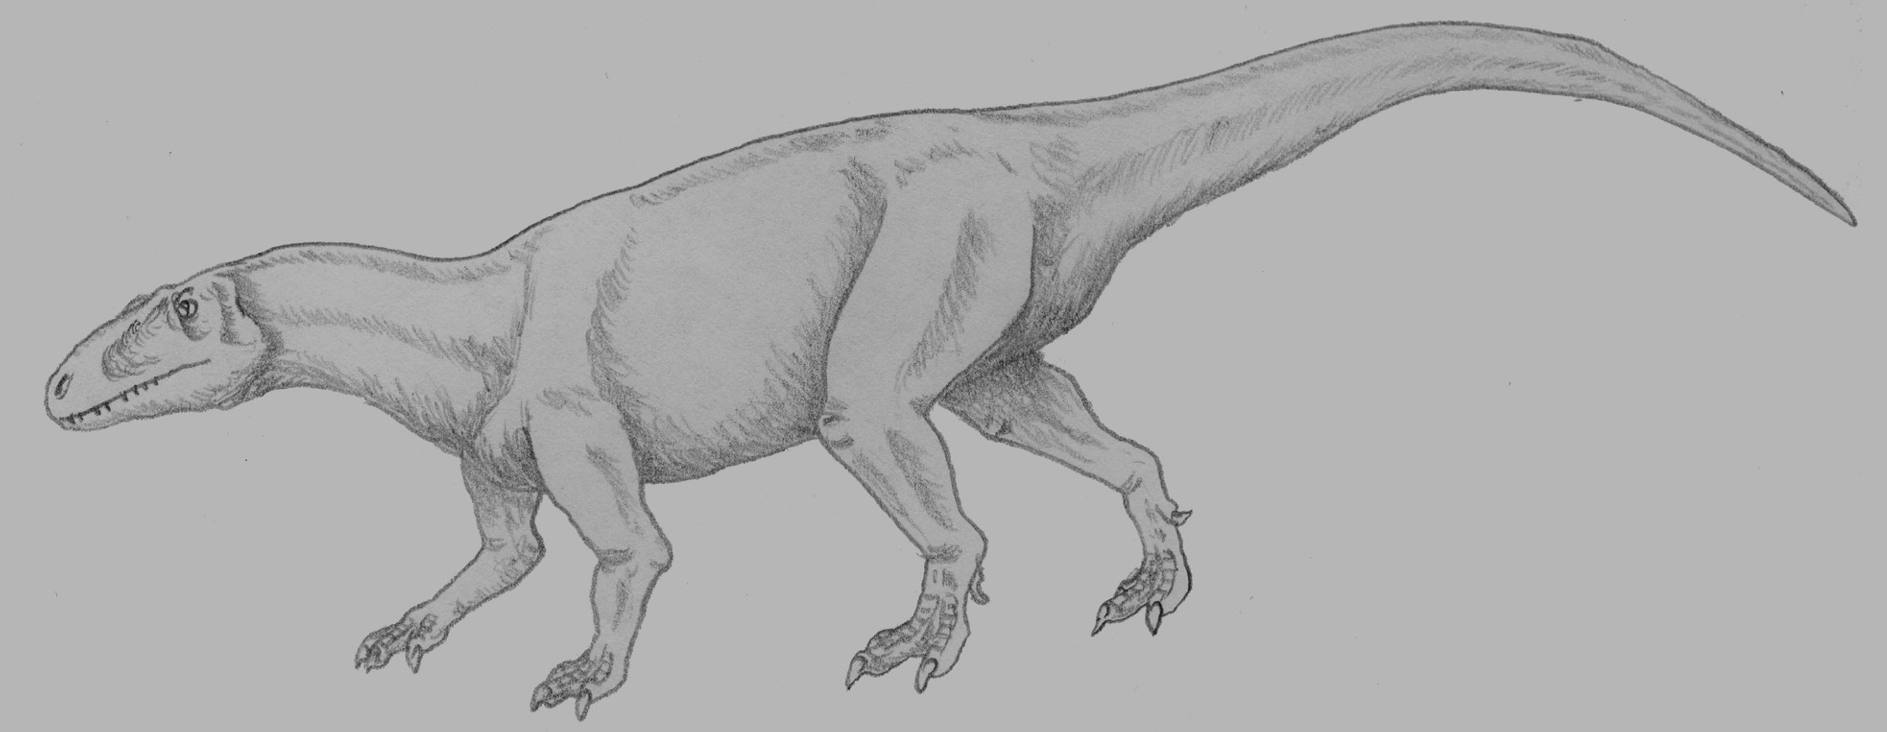 Přibližně takto si čínský paleontolog Tung Č’-ming představoval xuanhanosaura, kterého formálně popsal v roce 1984. Podle jeho názoru se mělo jednat o jediného známého kvadrupedního teropoda. Dnes už je však tato pozoruhodná hypotéza vyvrácena. Kredi